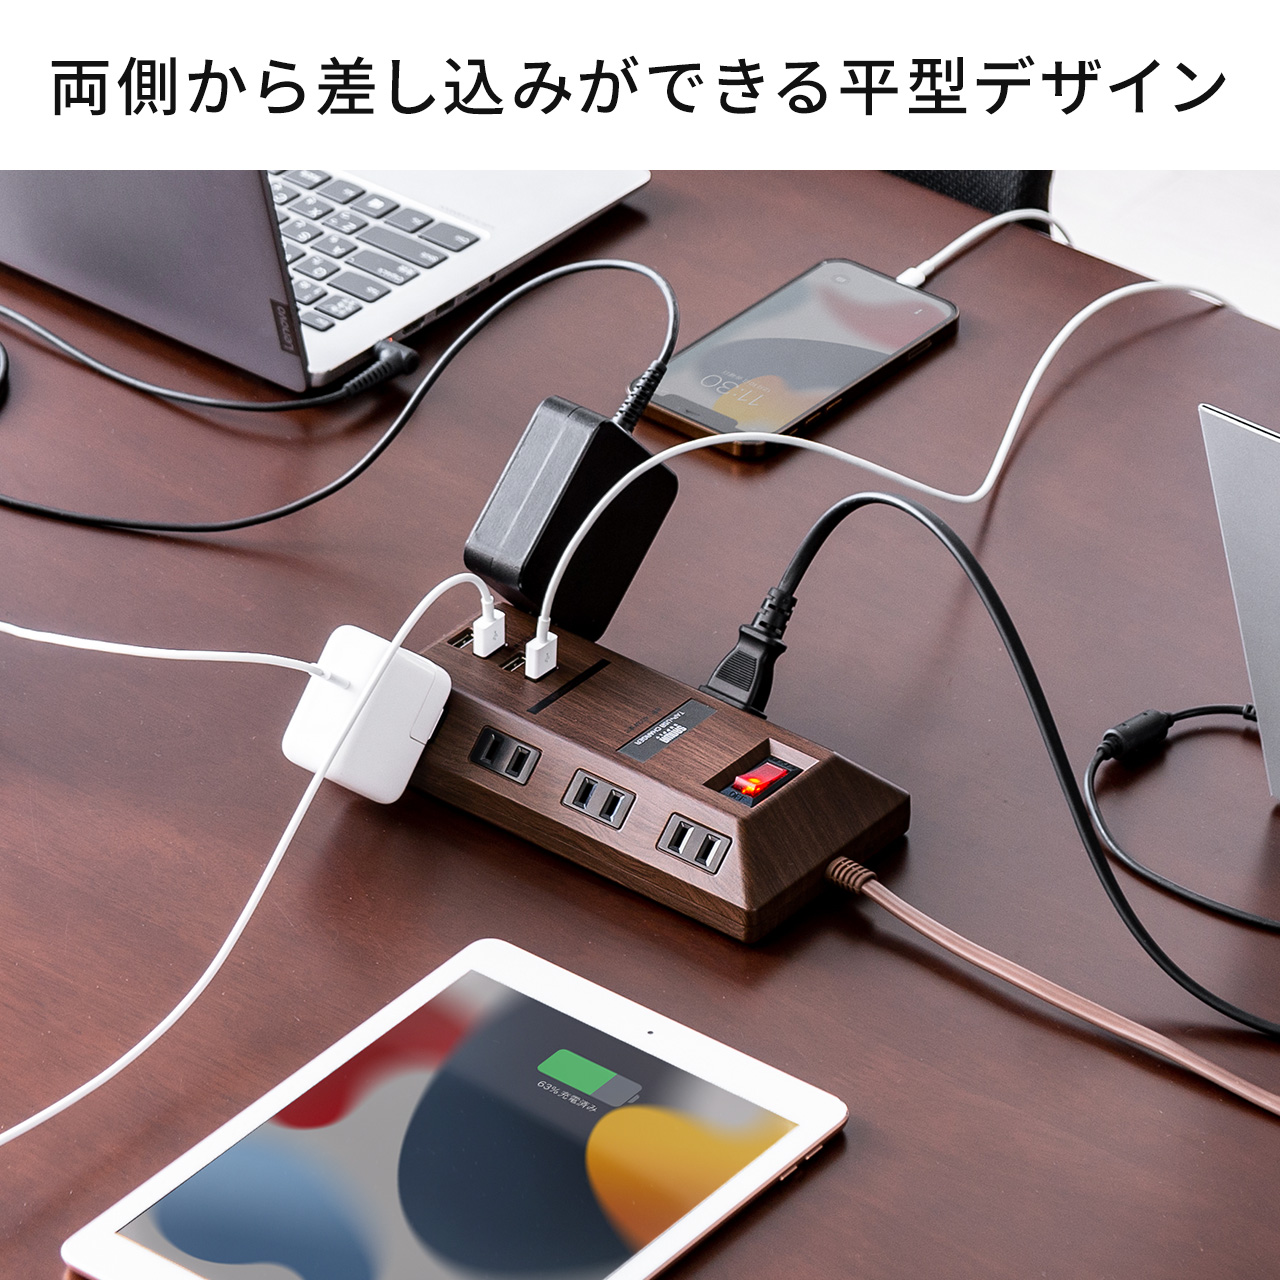 電源タップ USBポート付 iPhone スマホ充電 8個口 3m 一括集中スイッチ